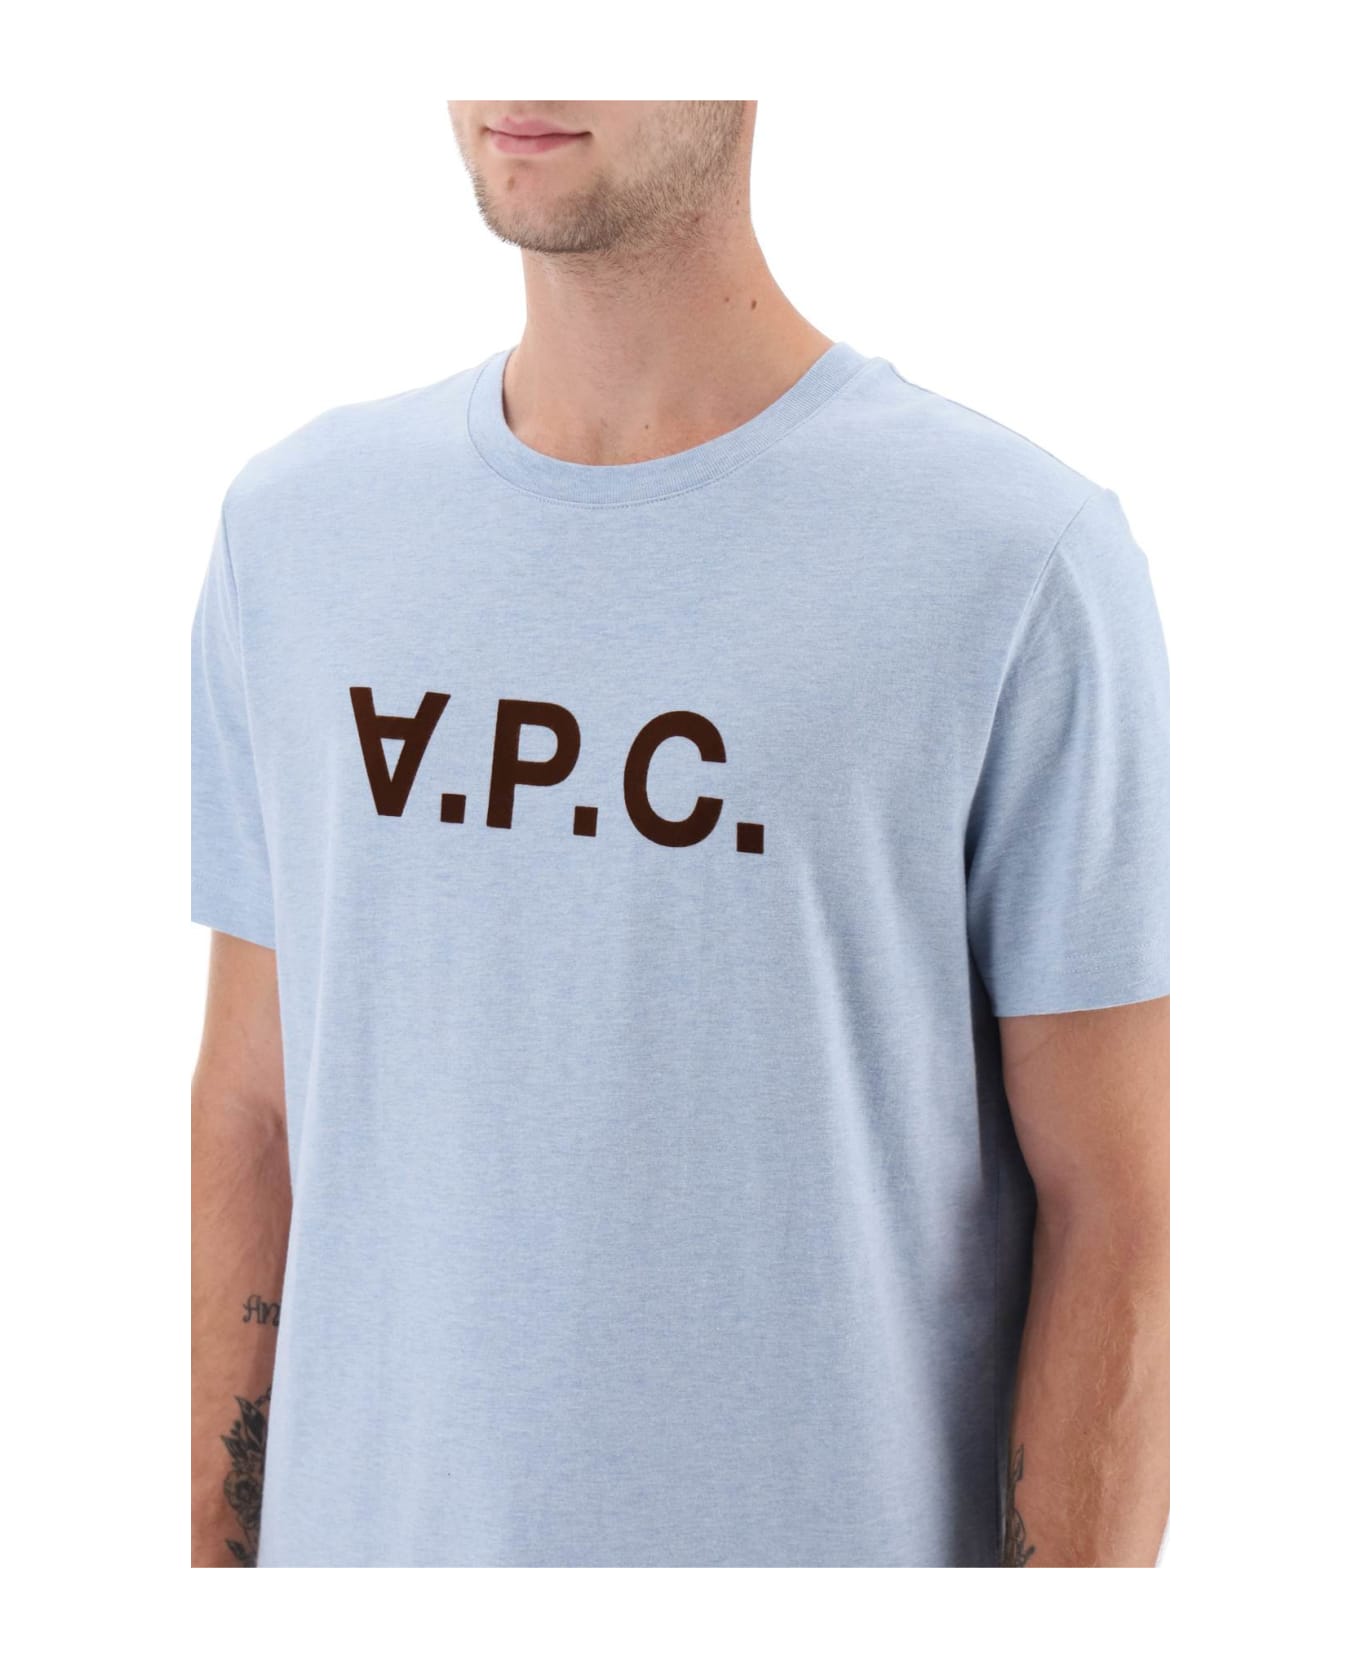 A.P.C. V.p.c. Logo T-shirt - INDIGO DELAVE